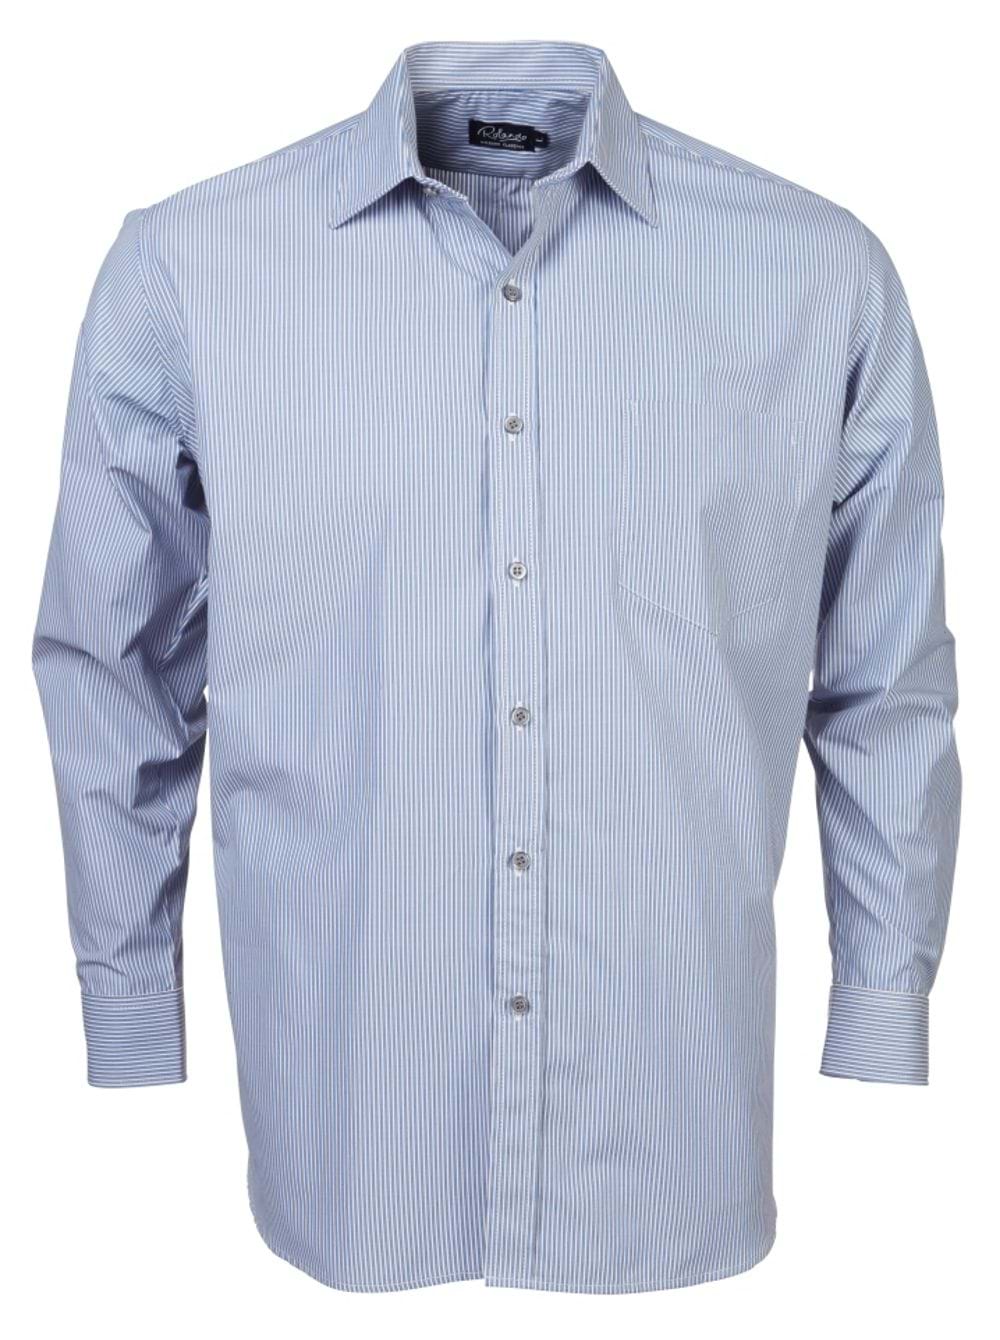 Mens K124 L/S Shirt - Blue/White